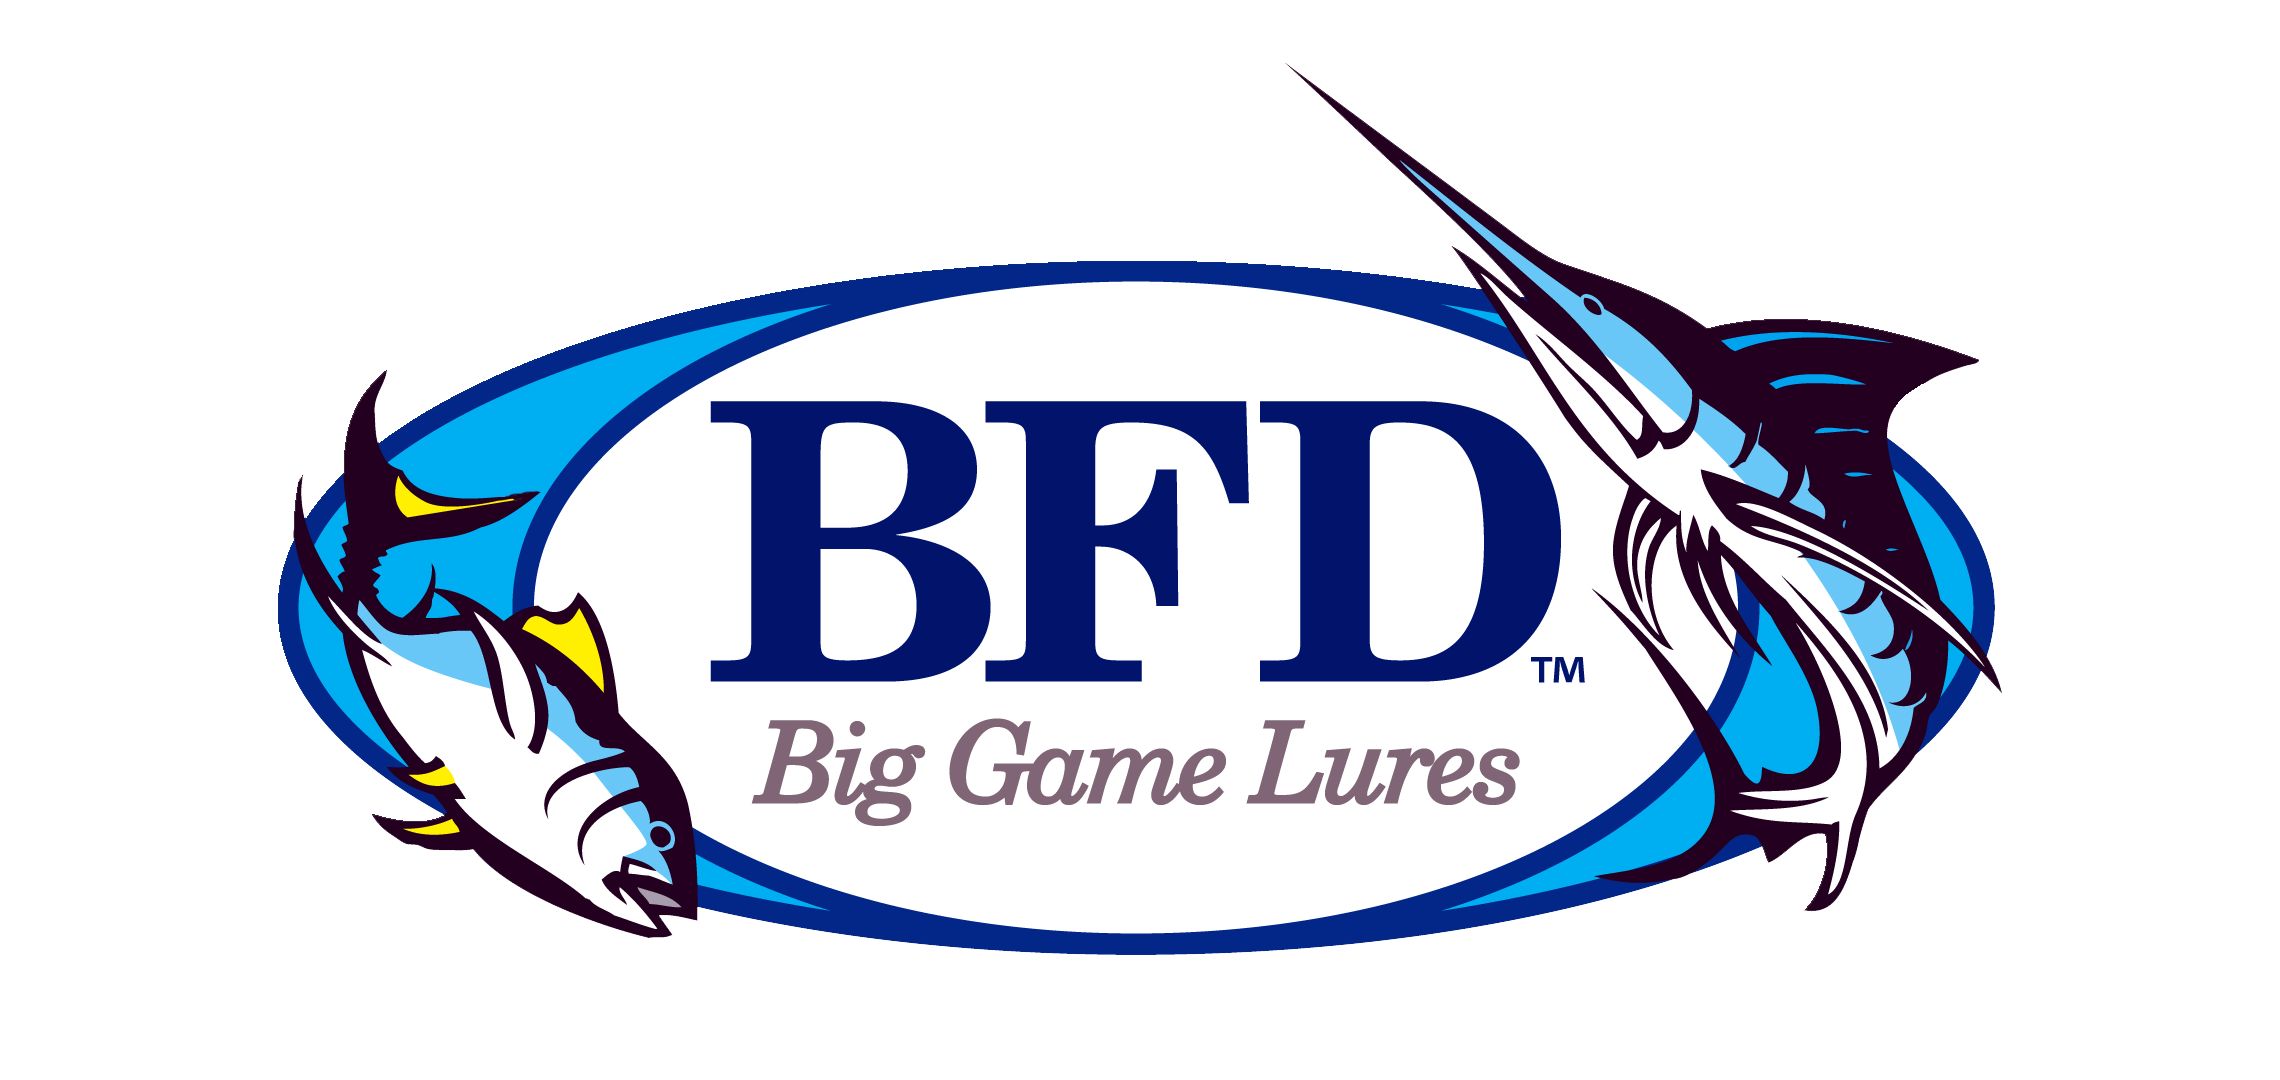 BFG Big Game Lures logo